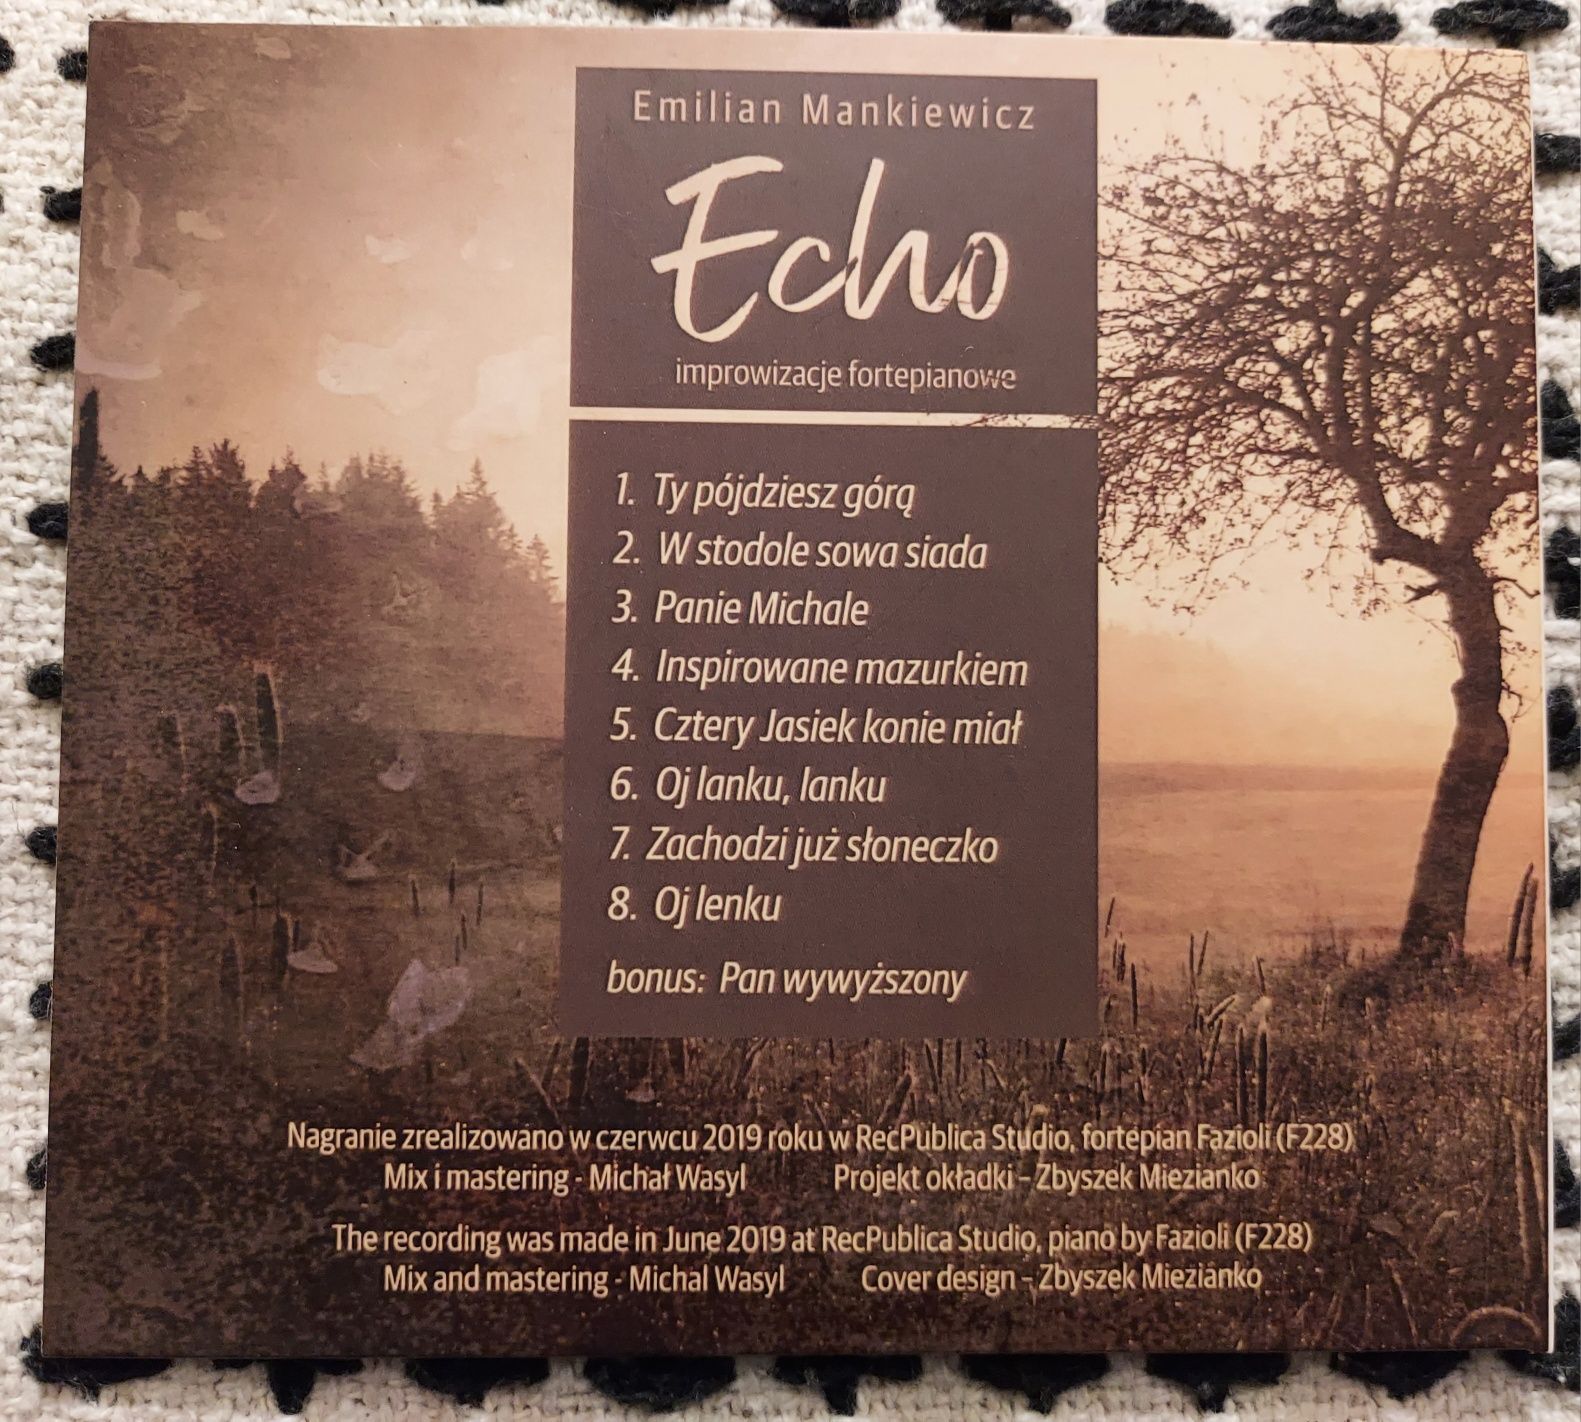 Emilian Mankiewicz Echo improwizacje fortepianowe CD